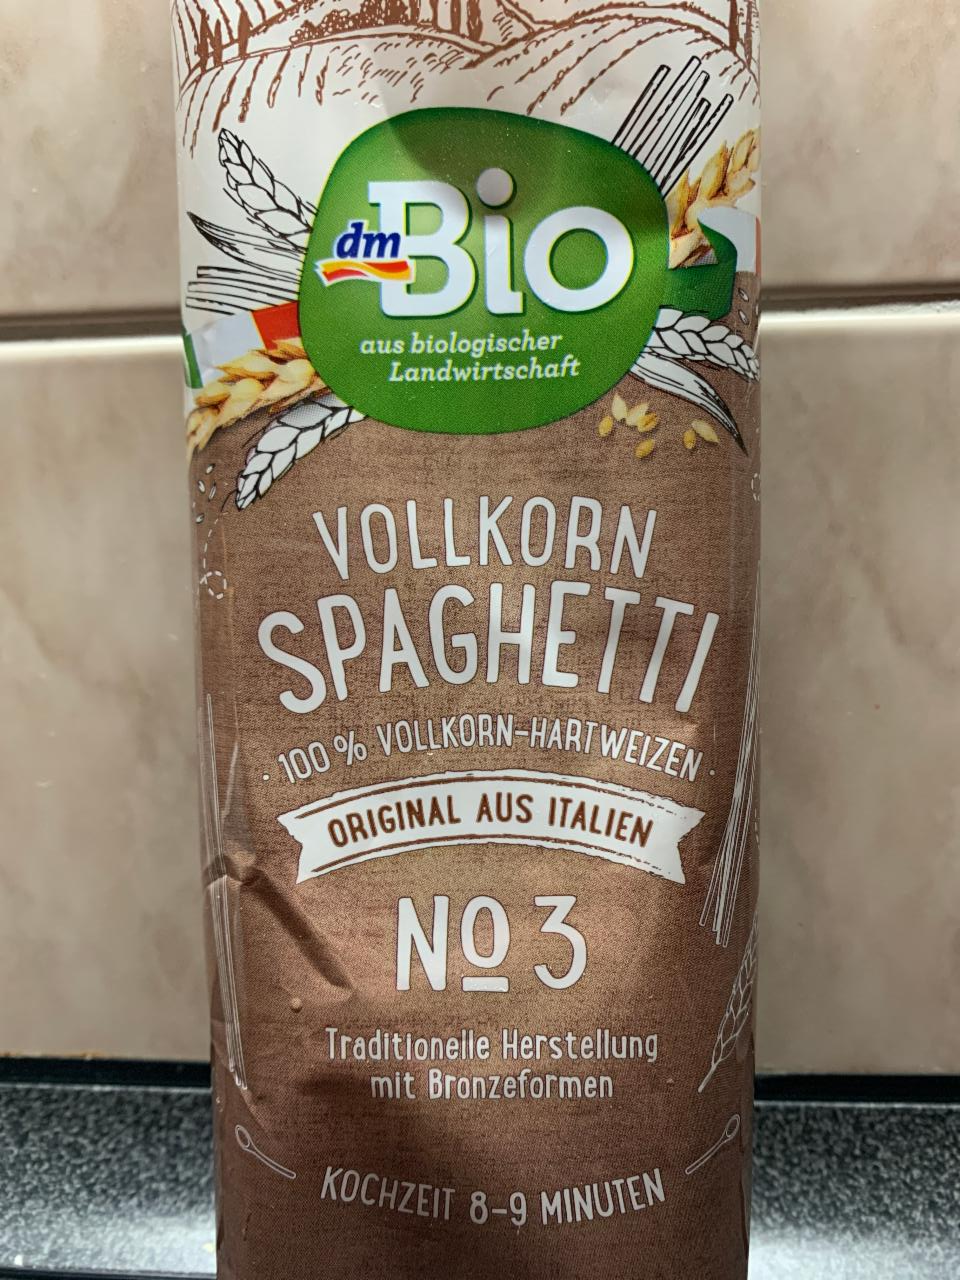 Fotografie - Vollkorn Spaghetti No 3 dmBio